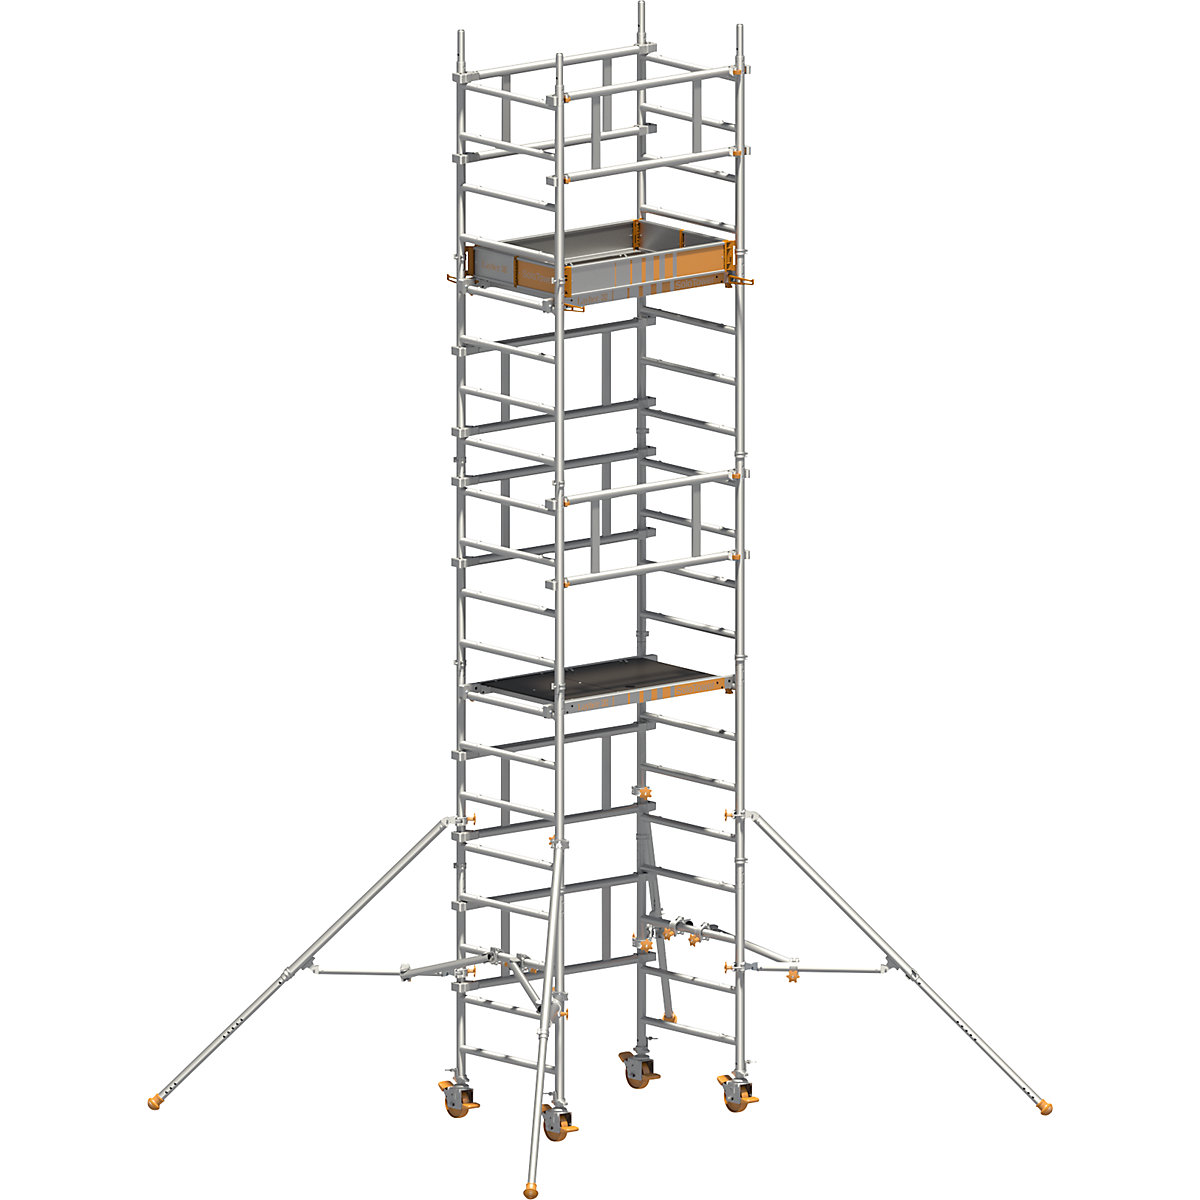 Schelă mobilă montabilă de o persoană SoloTower – Layher, dimensiune platformă 1,15 x 0,8 m, înălțime de lucru 6,15 m-2